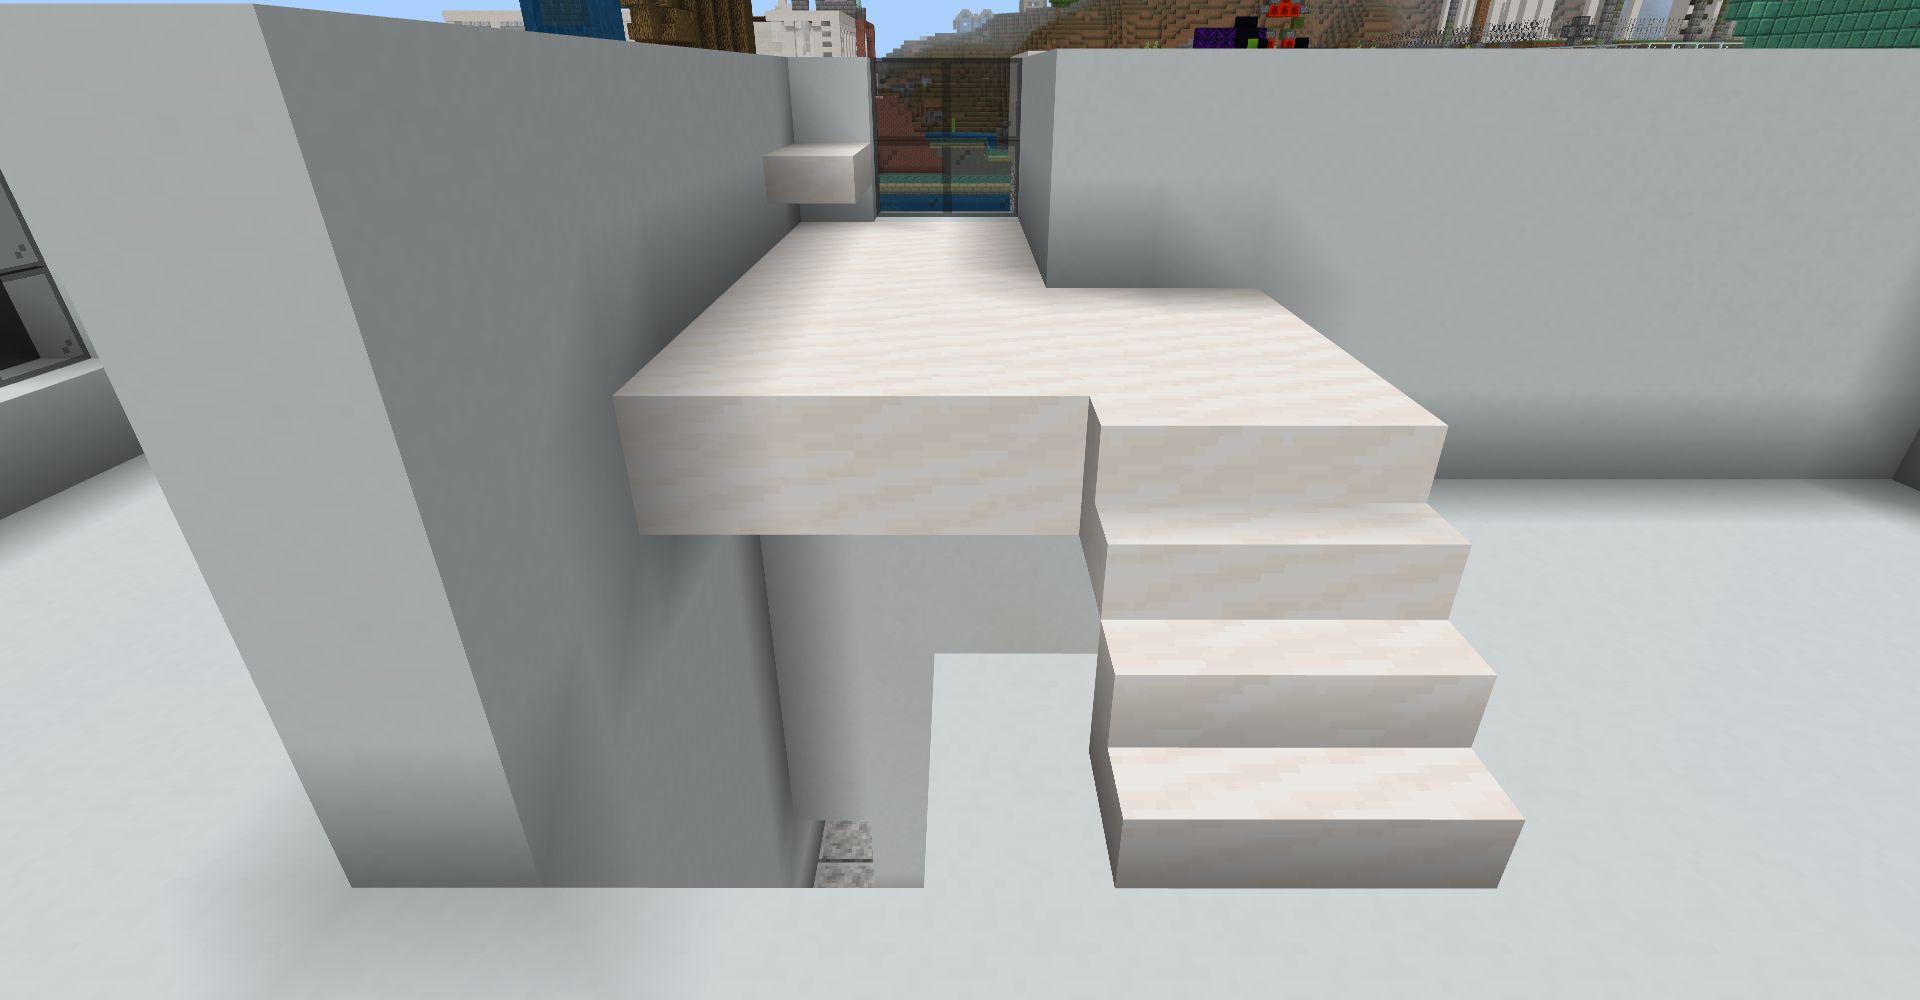 「滑らかなクォーツの階段」を4つ置いて、奥に「滑らかなクォーツのハーフブロック」を設置